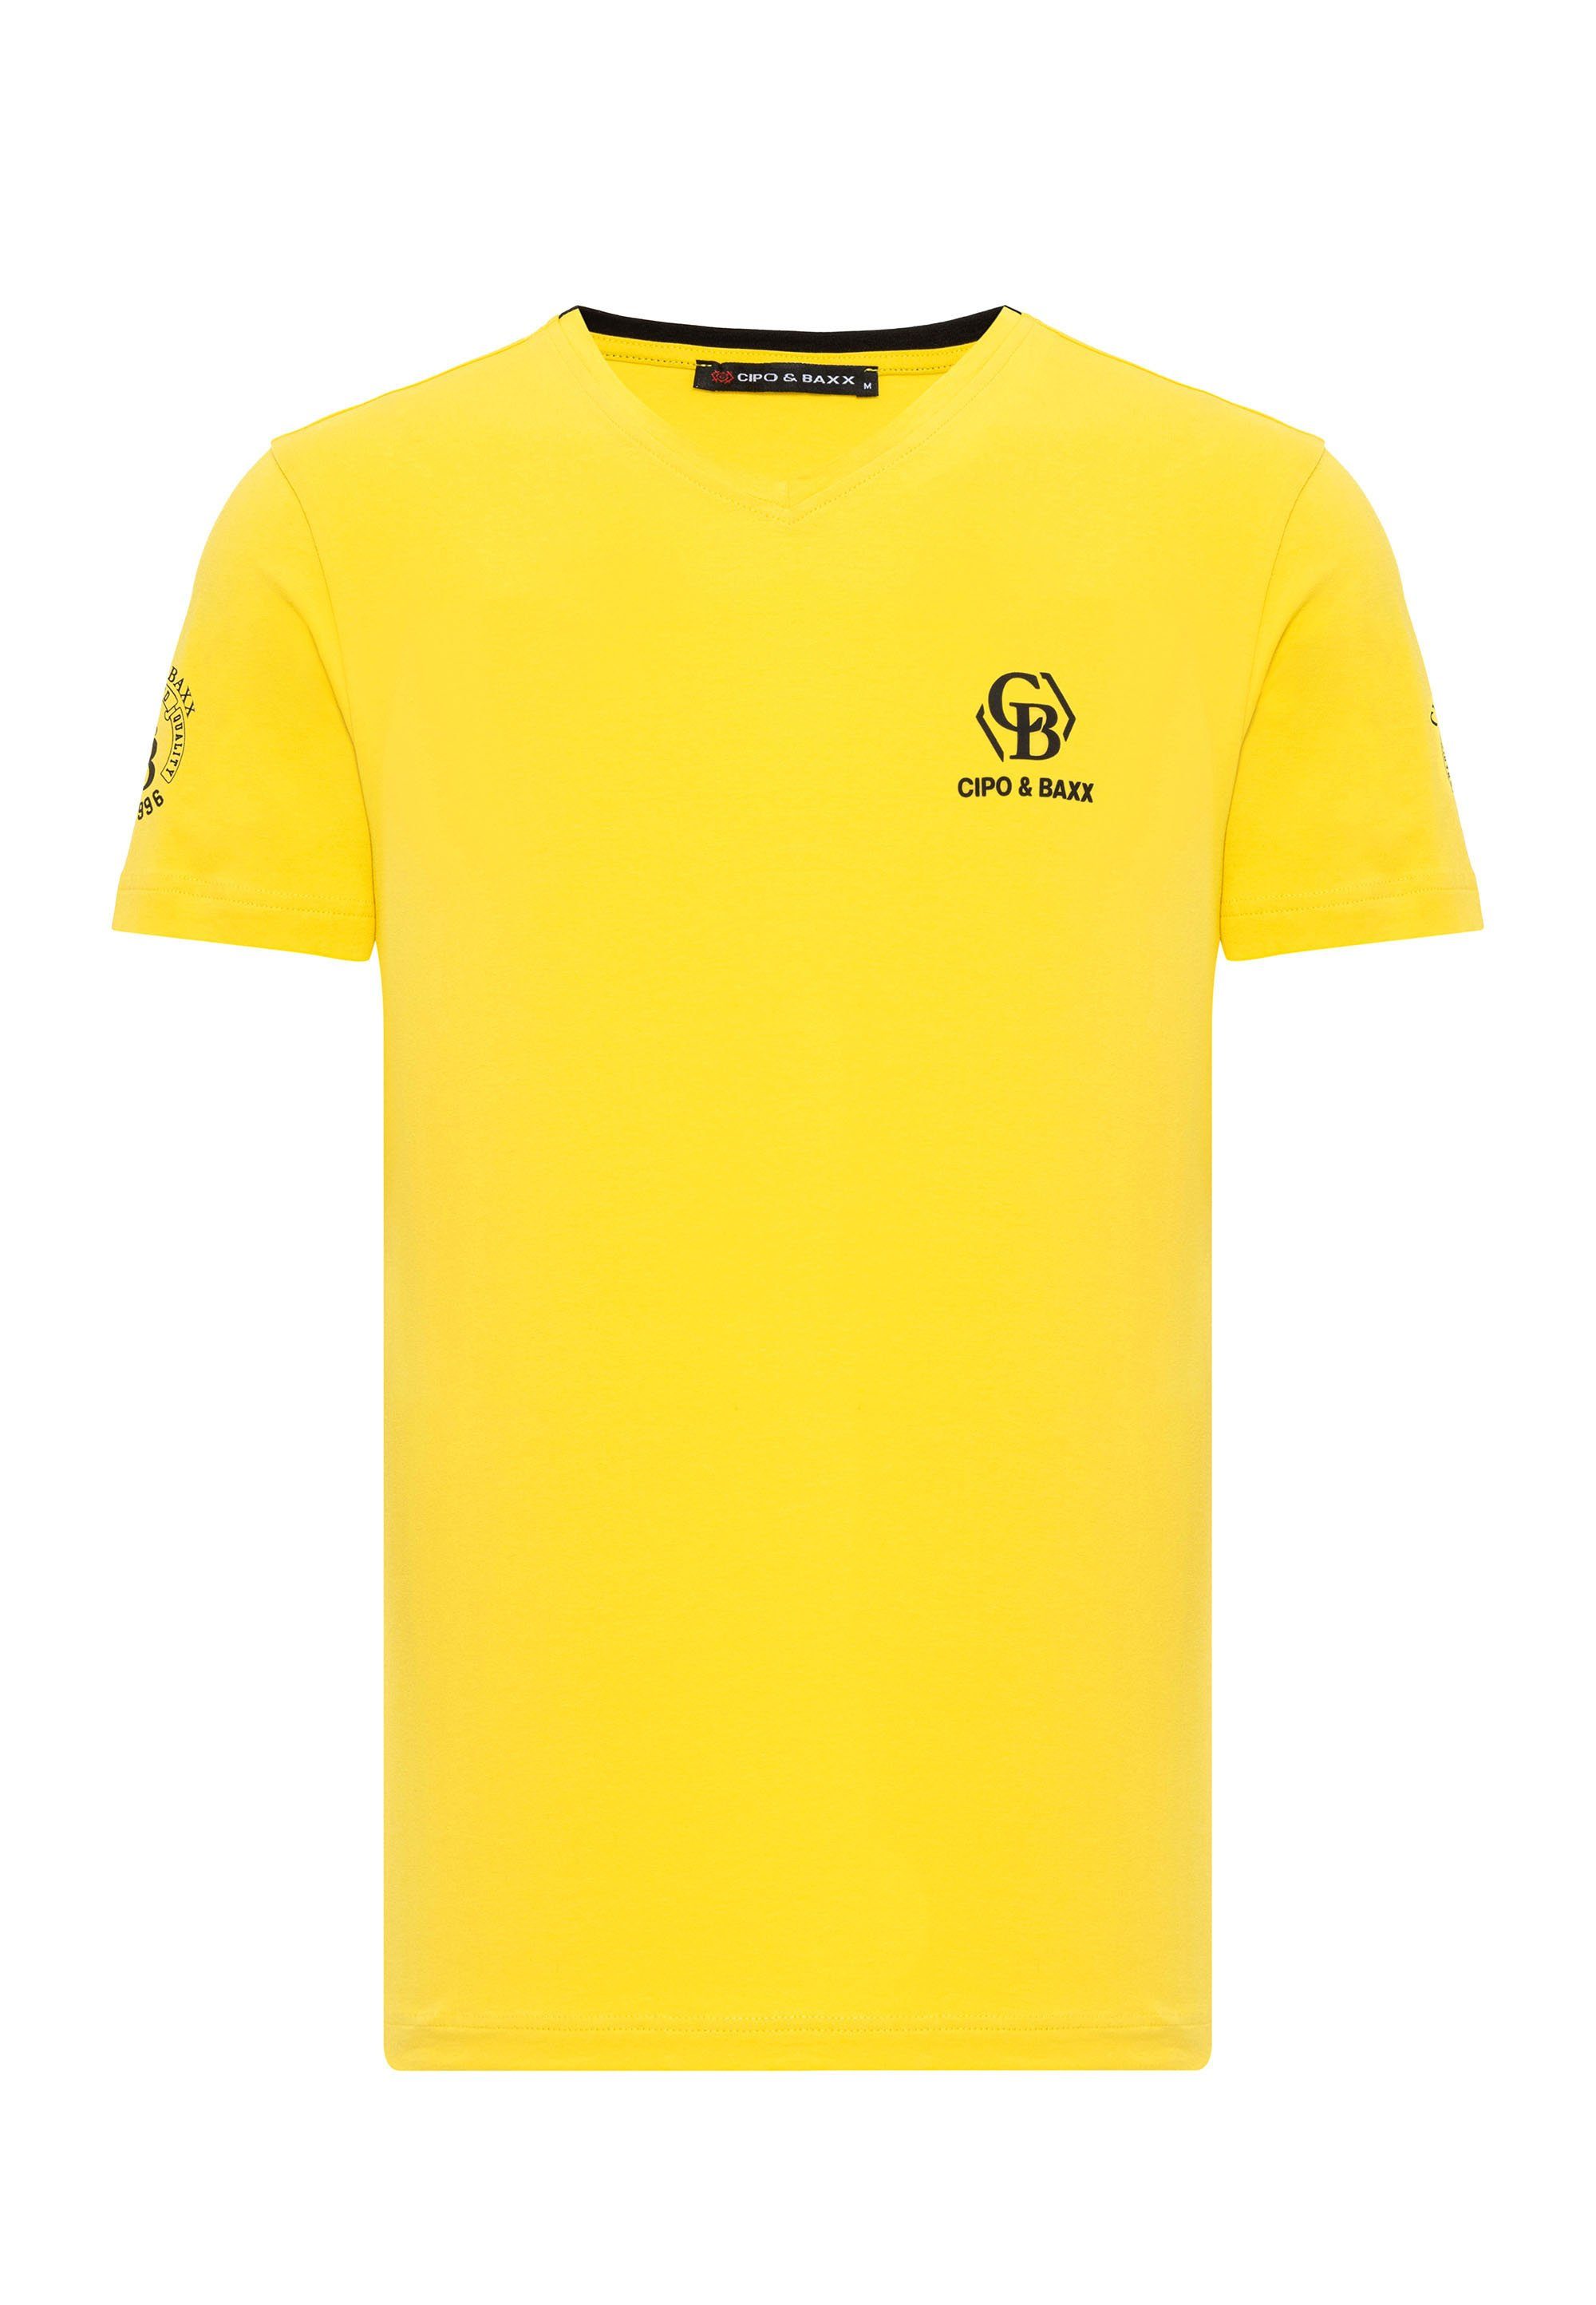 mit Cipo dezenten Baxx Markenlogos T-Shirt gelb &